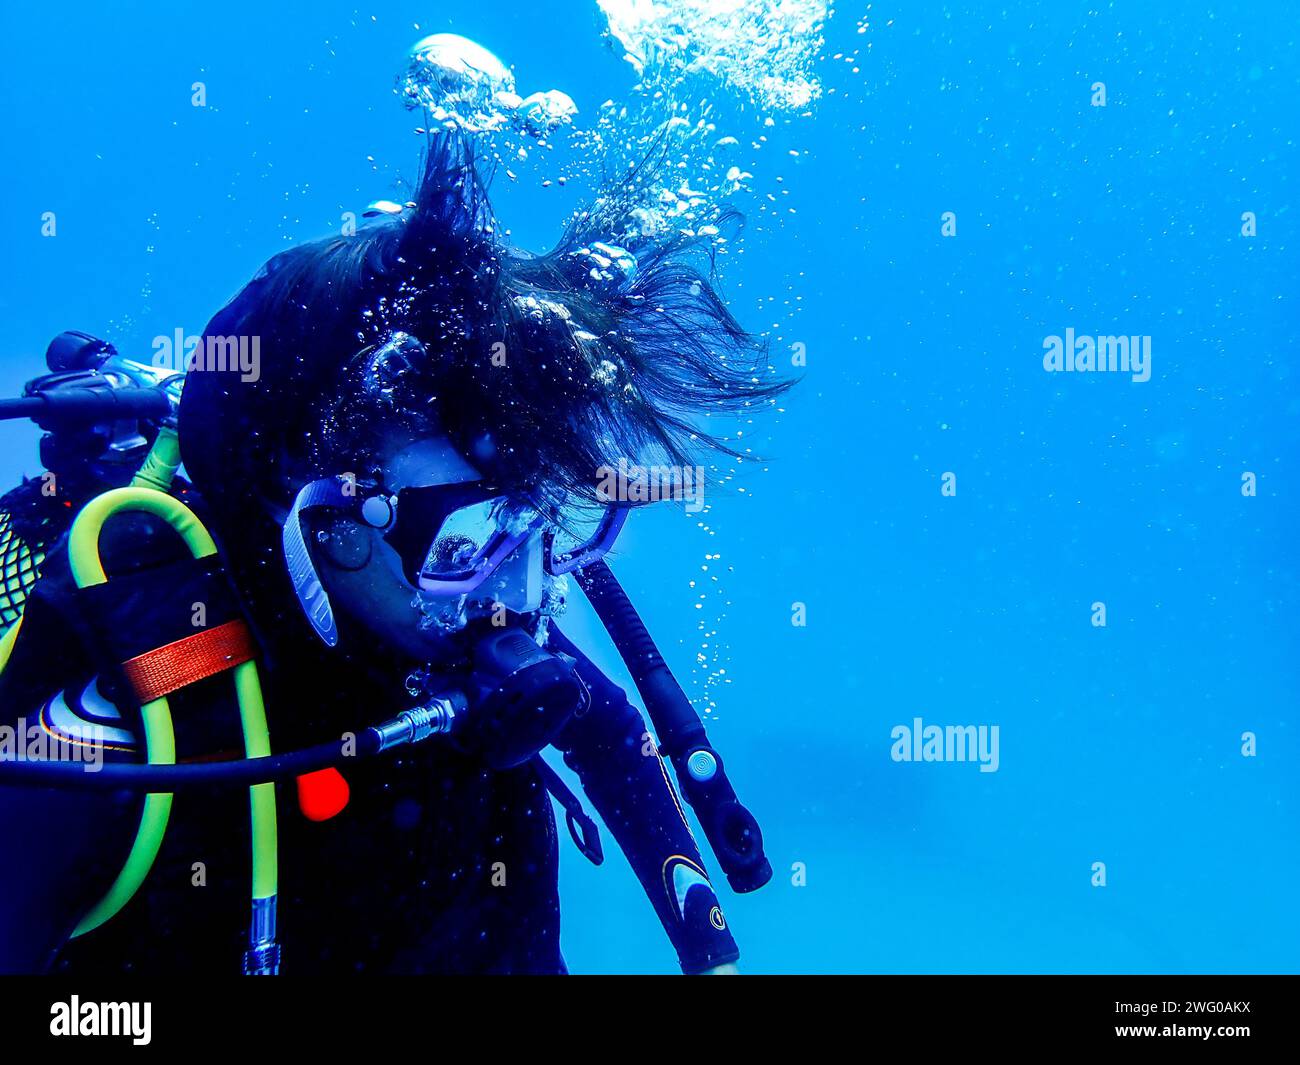 Tauchen Sie in Lanzarotes tiefes Blau, umgeben von Blasen, mit der wichtigsten Ausrüstung und dem Unterwasser-Flair Stockfoto